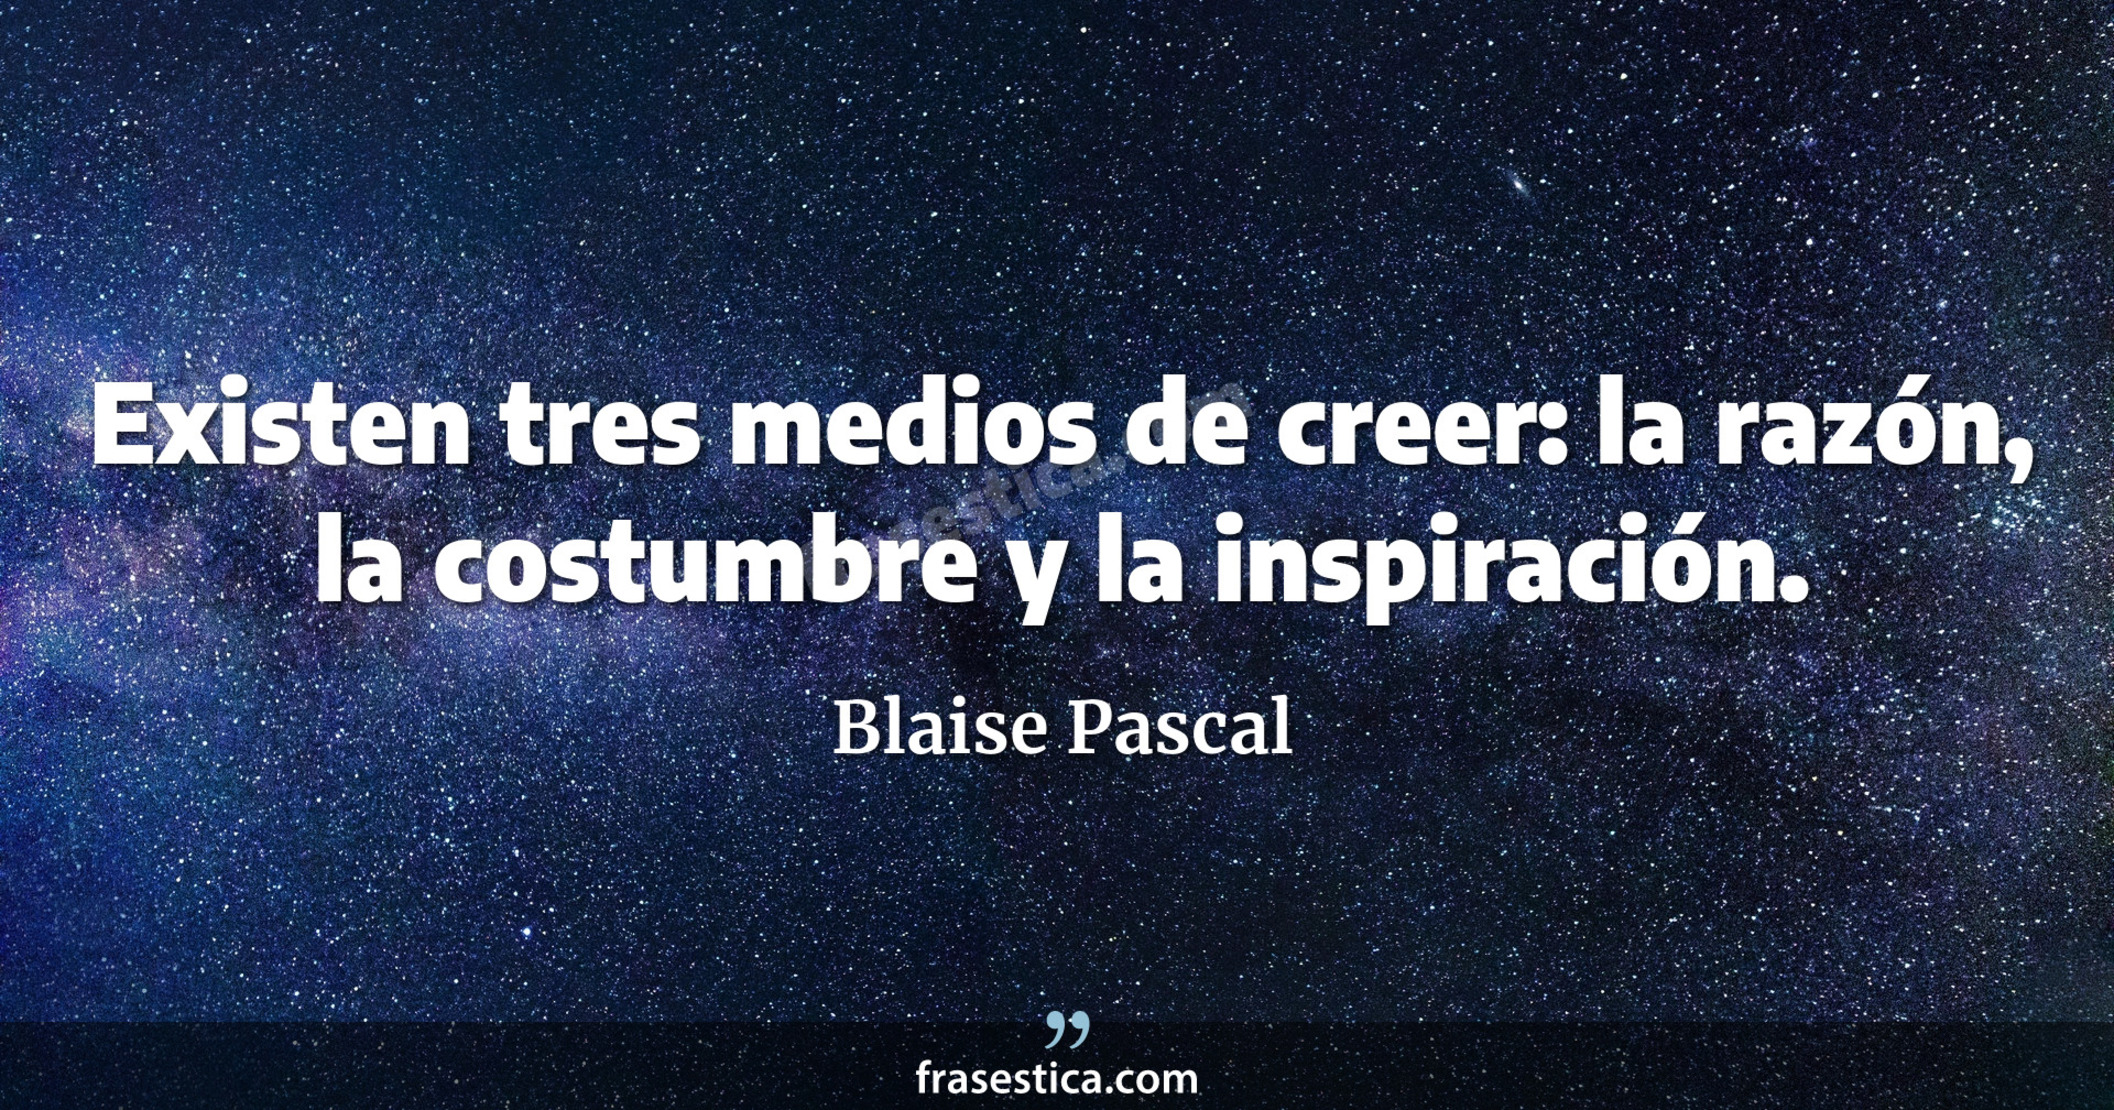 Existen tres medios de creer: la razón, la costumbre y la inspiración. - Blaise Pascal